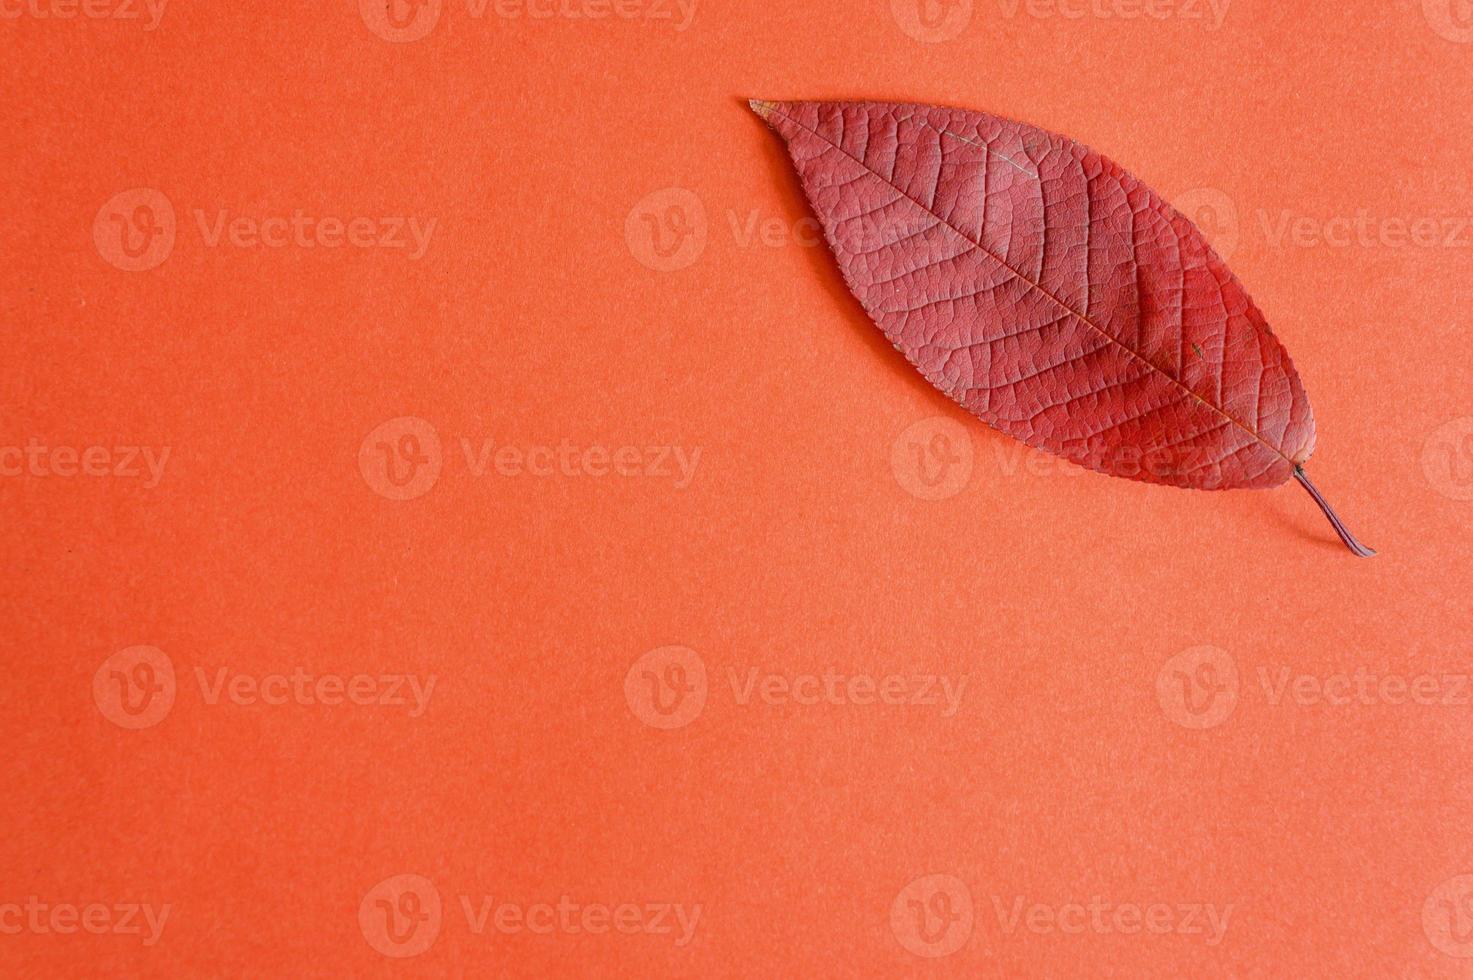 röda fallna höstkörsbärsblad på en röd pappersbakgrund foto